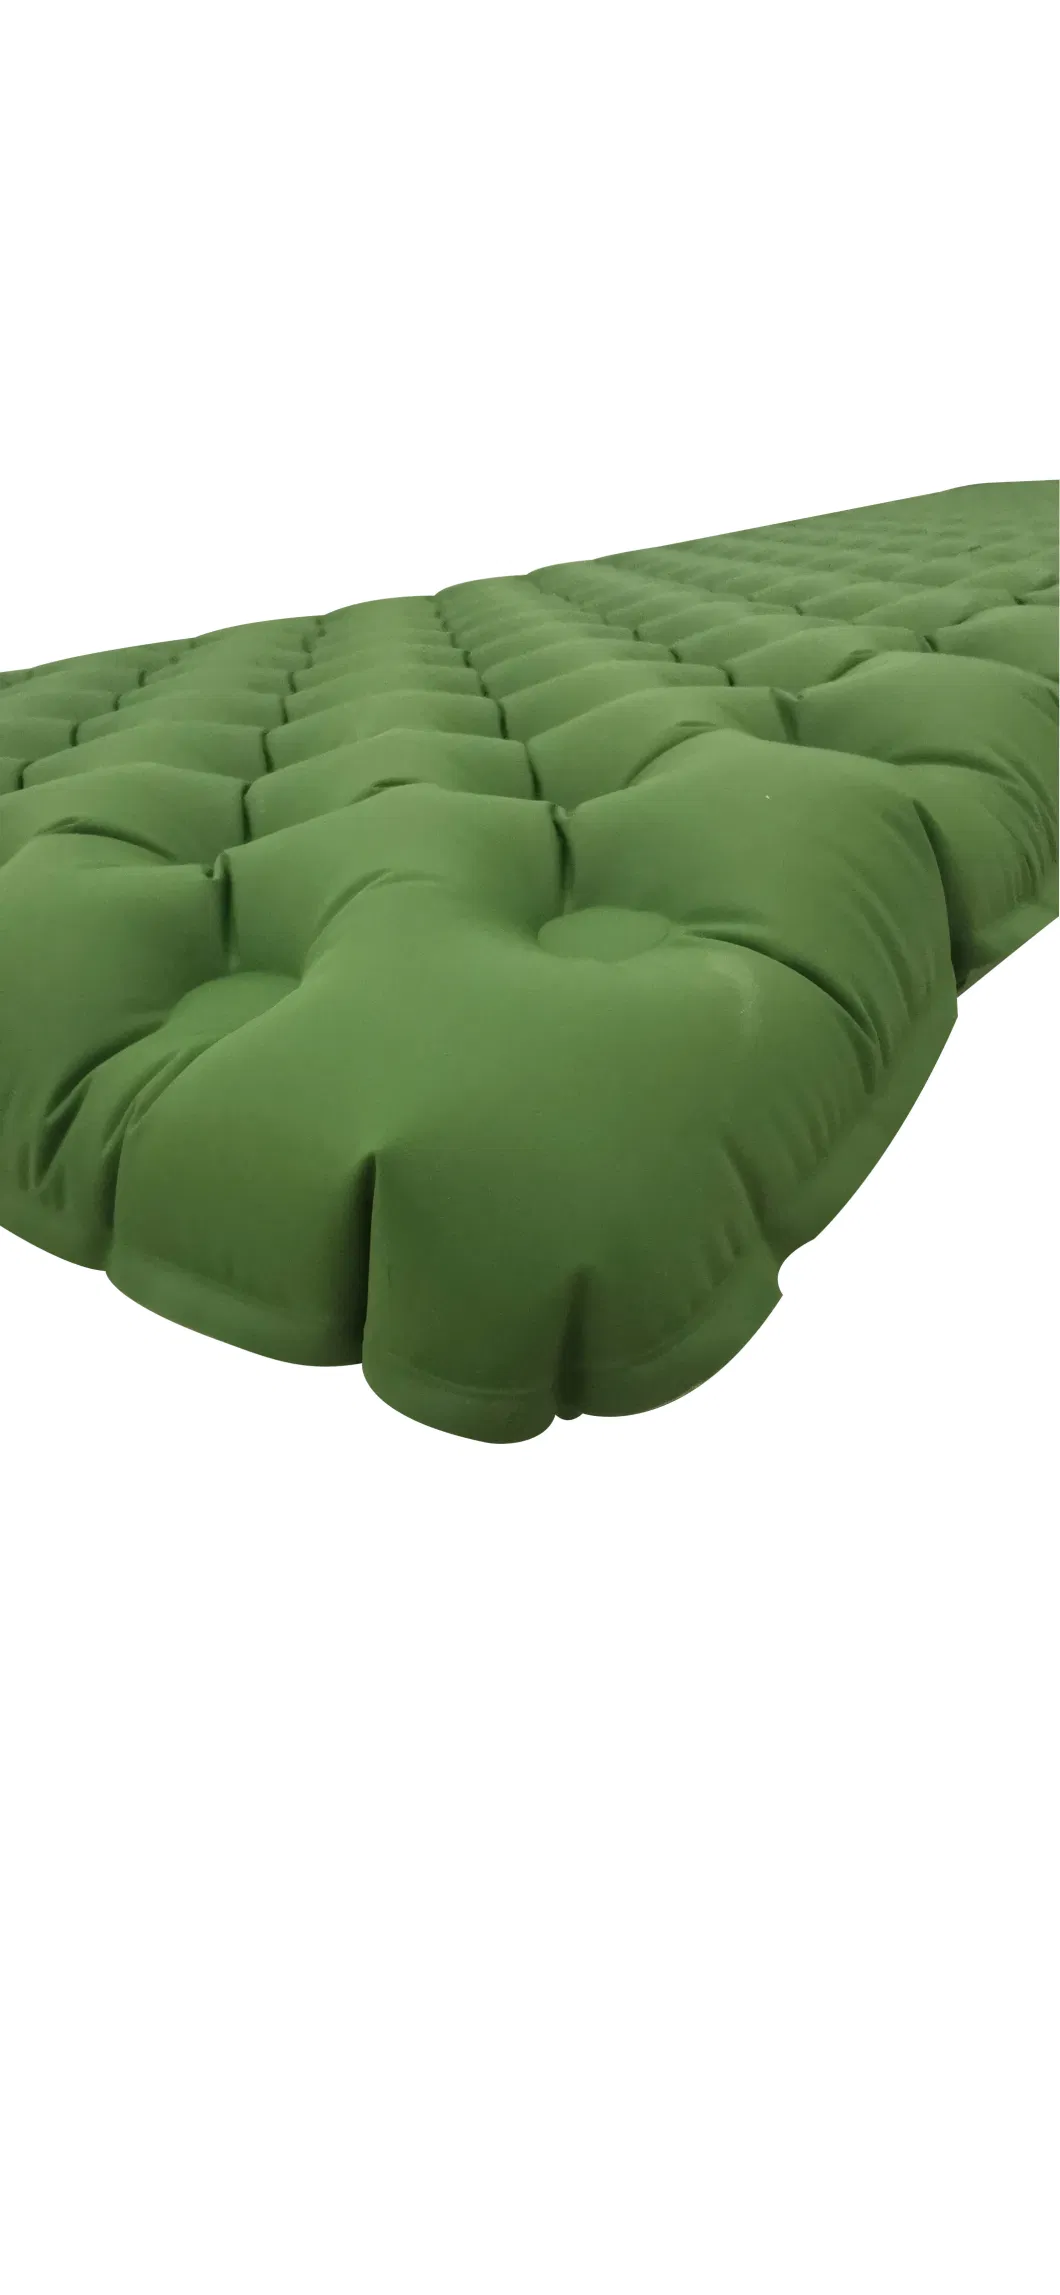 Lightweight Air Mat Inflatable Double Sleeping Pad Outdoor Mat Air Mattress Bed